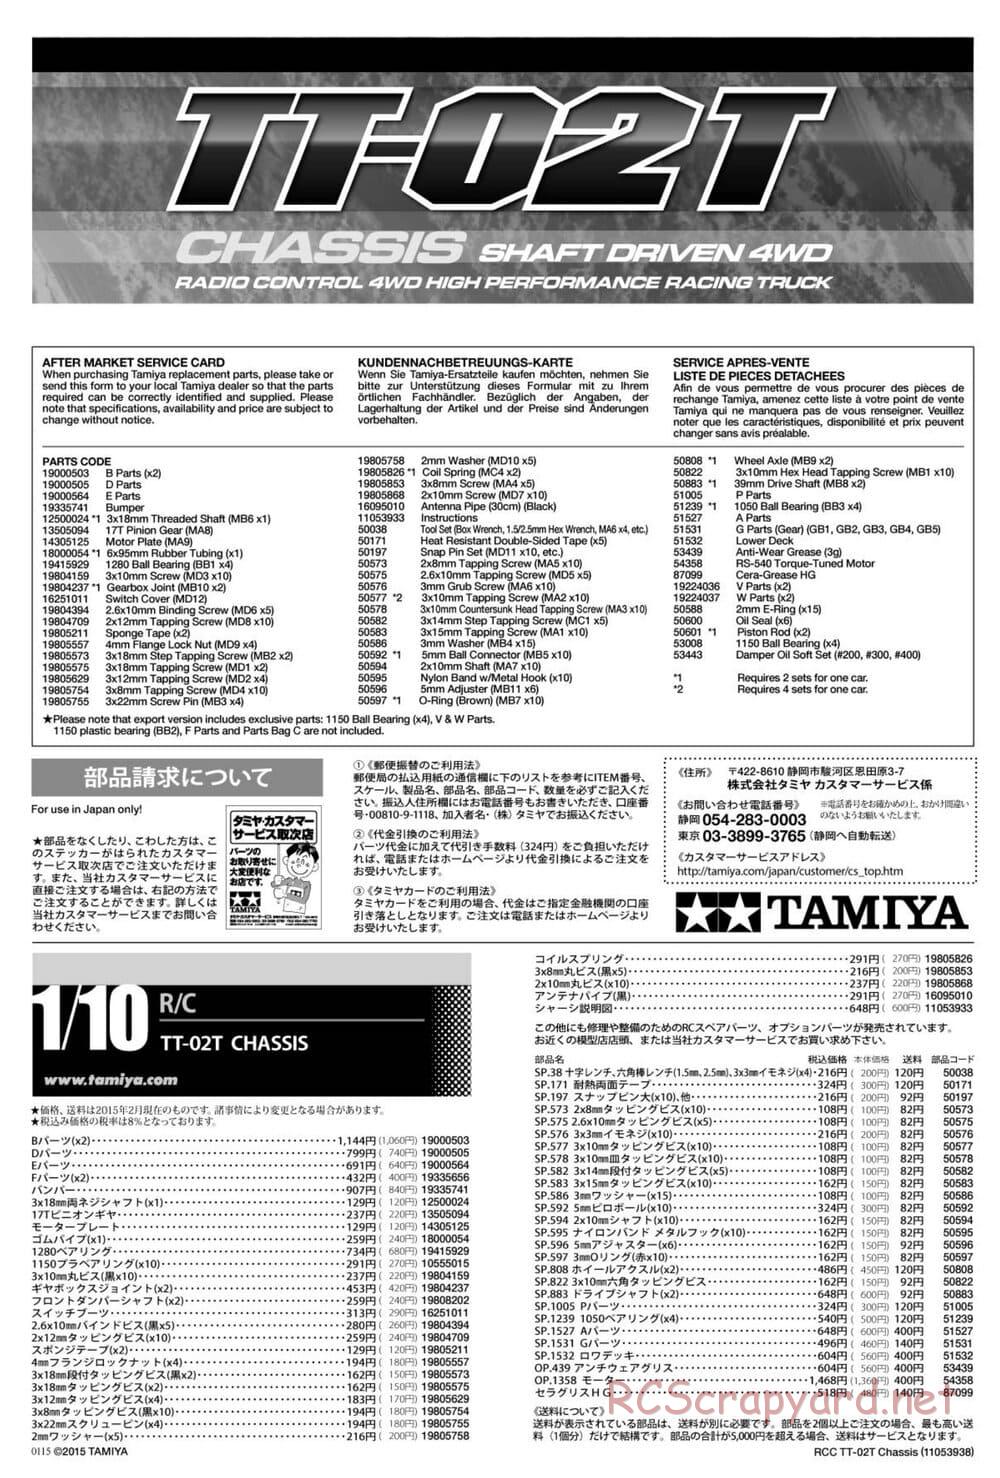 Tamiya - TT-02T Chassis - Manual - Page 26